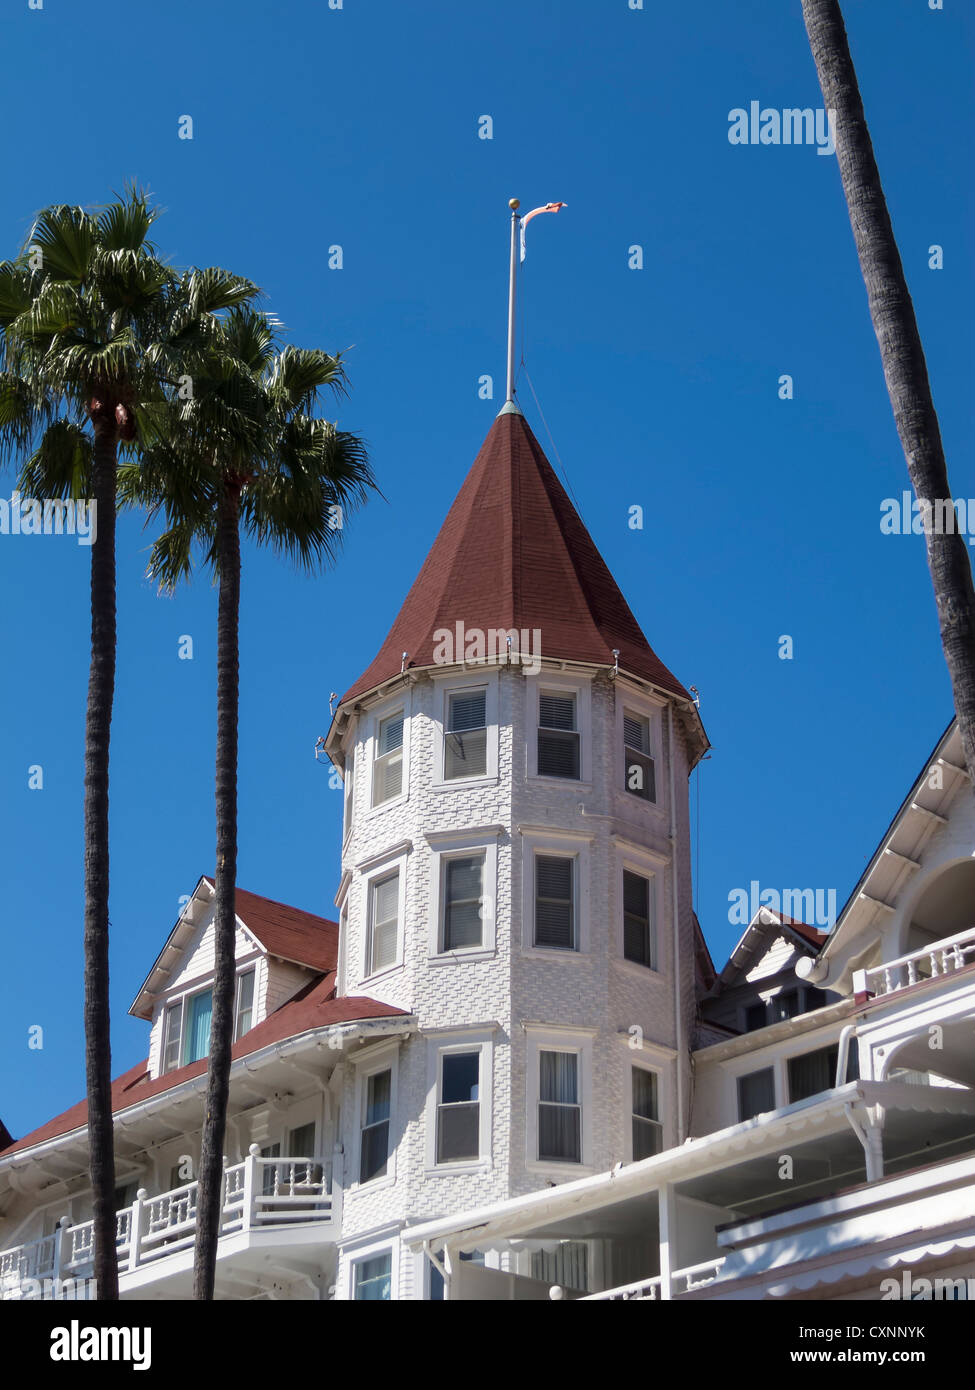 Del Coranado Hotel, Coranado Island, San Diego CA Stock Photo